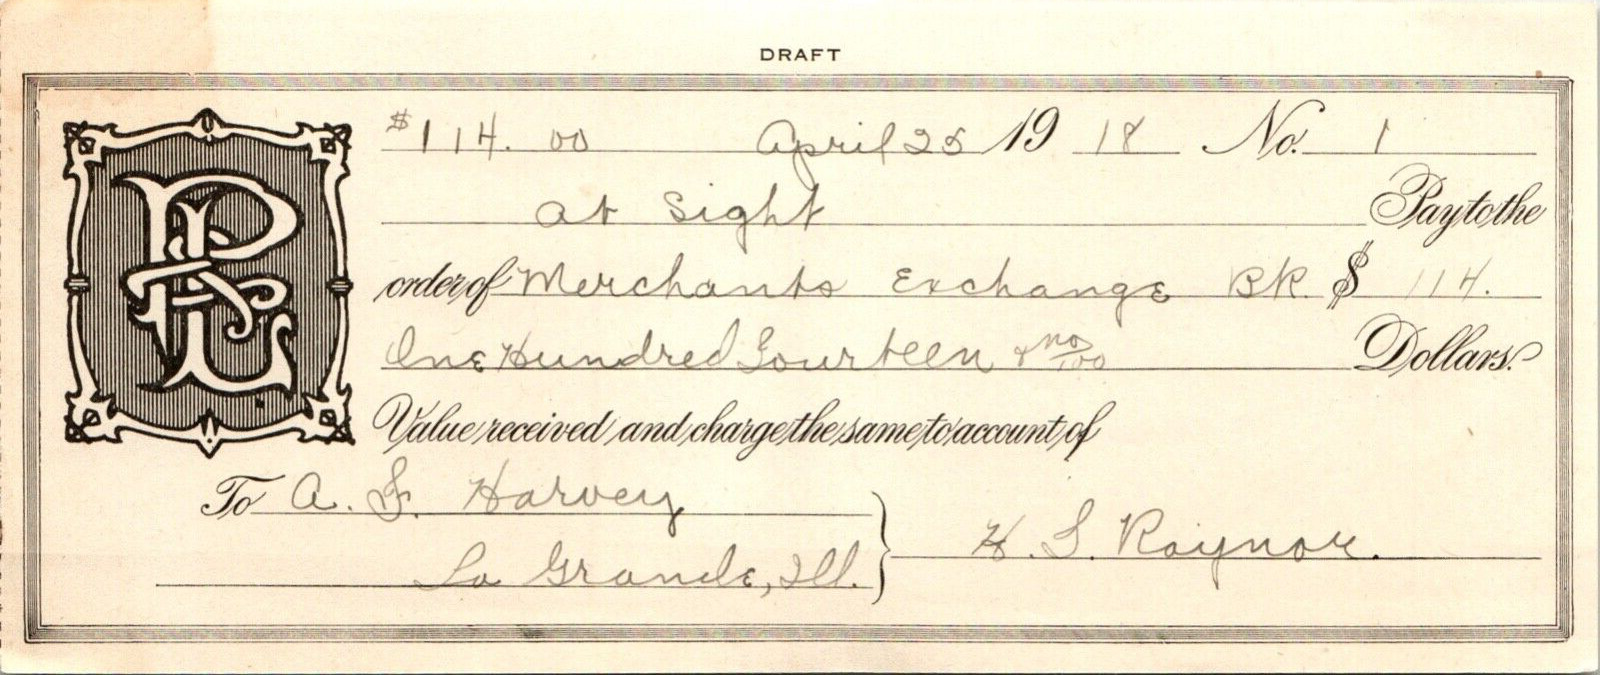 Merchants Exchange Promissory Note Handwriting Name: Raynor 1918